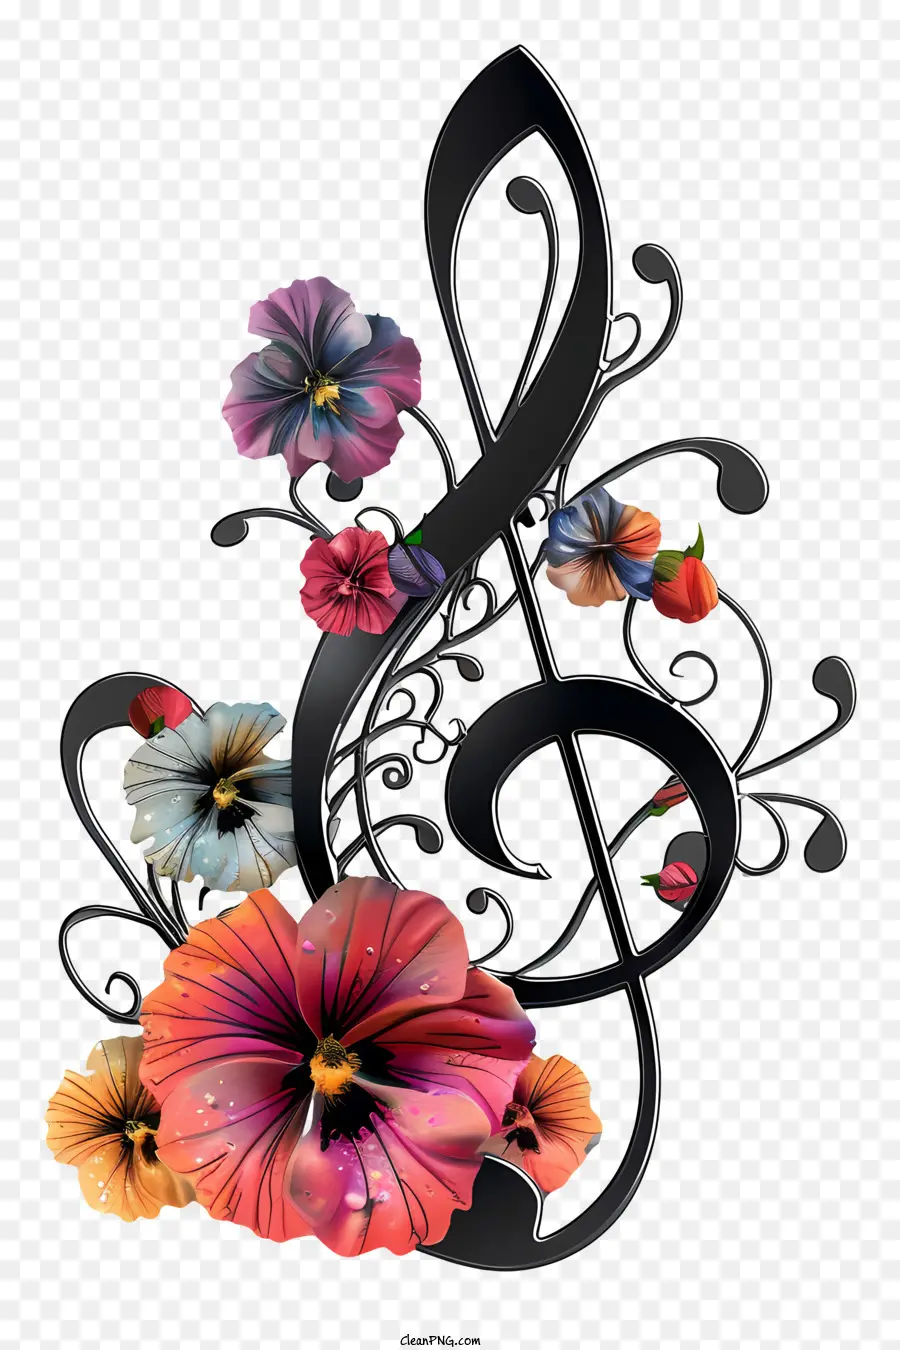 le note di musica - Foglio musicale d'argento con elementi floreali e colori